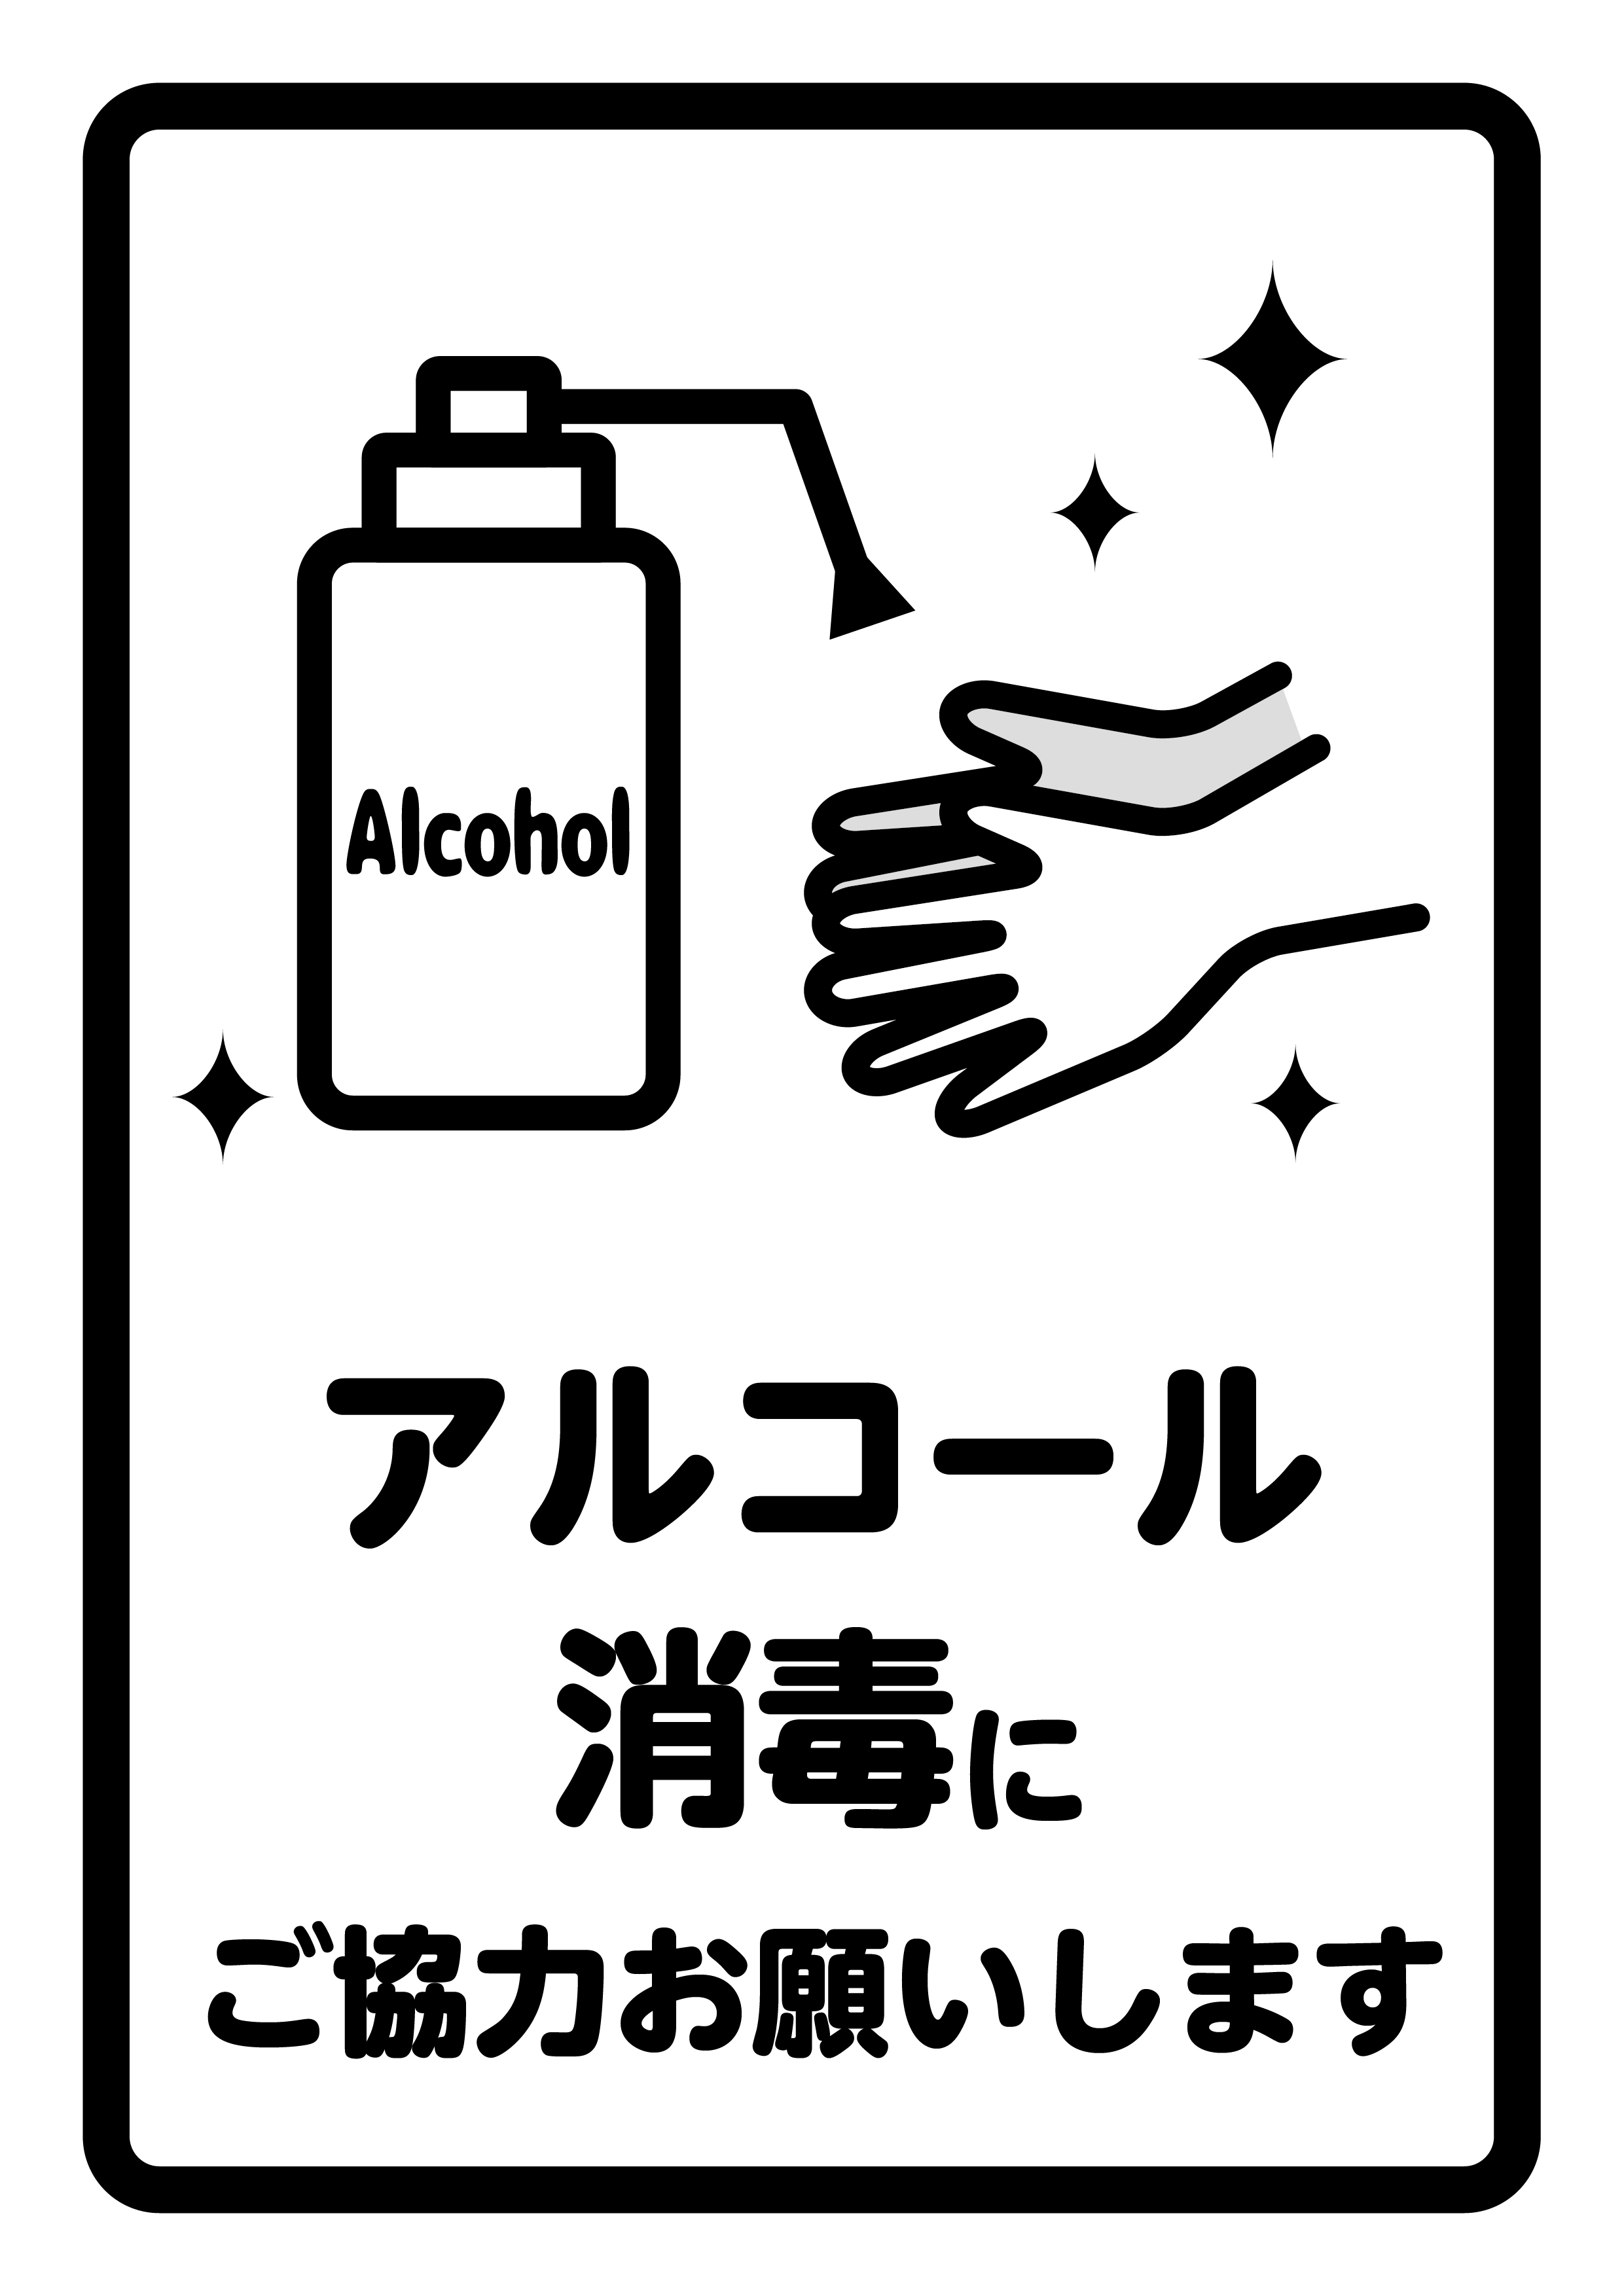 飲食店応援プロジェクト アルコール消毒 販促物の企画 デザイン 制作でお困りの方は米沢市の川島印刷にご相談ください